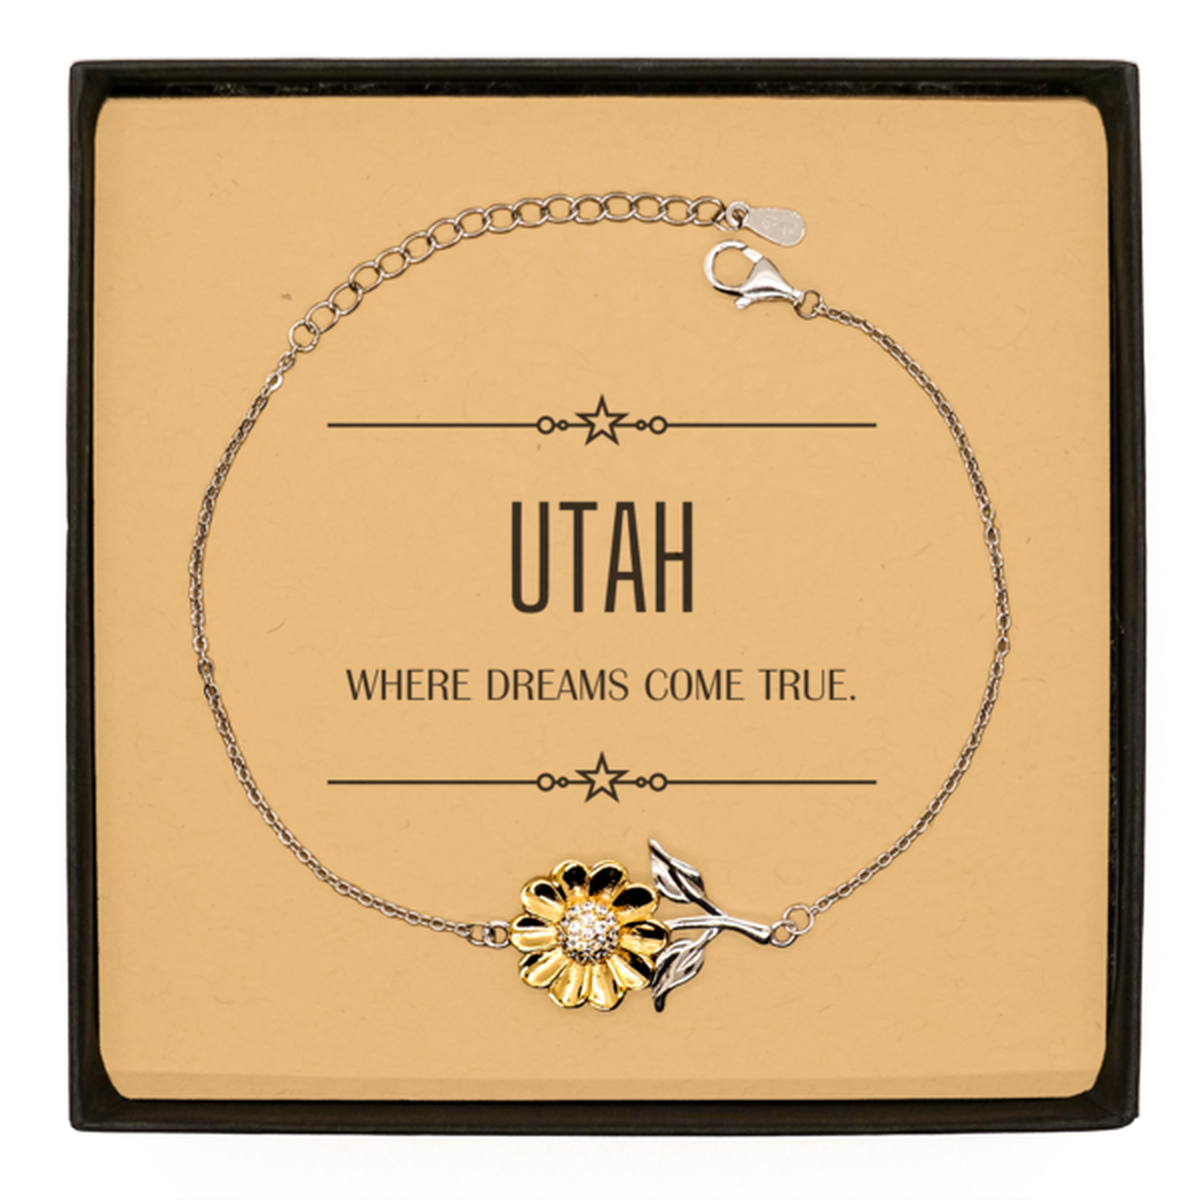 Love Utah State Sunflower Bracelet, Utah Where dreams come true, Birthday Inspirational Gifts For Utah Men, Women, Friends